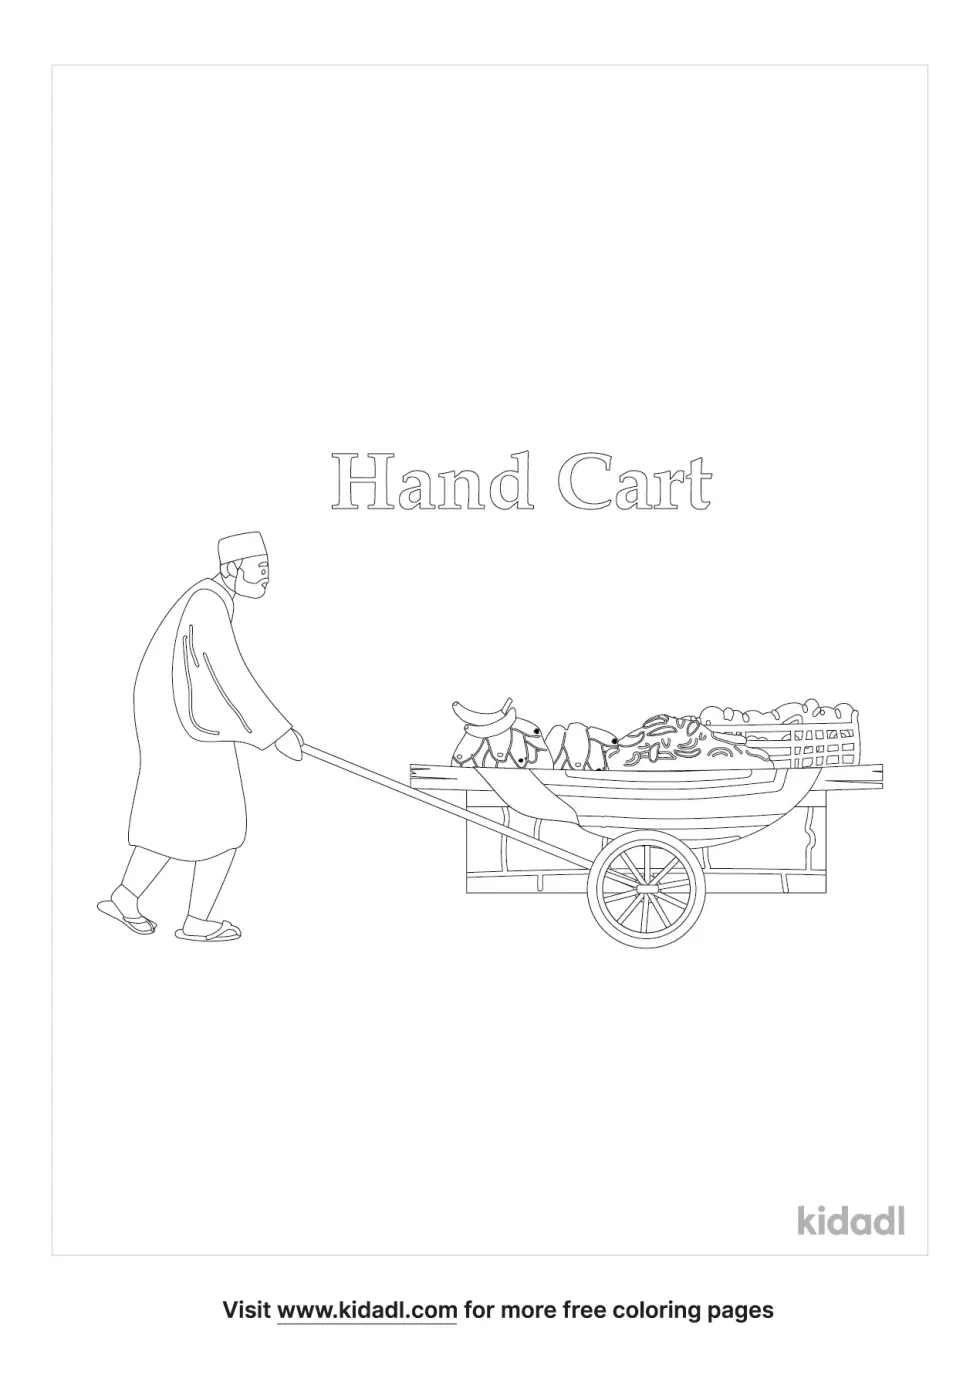 Hand Cart